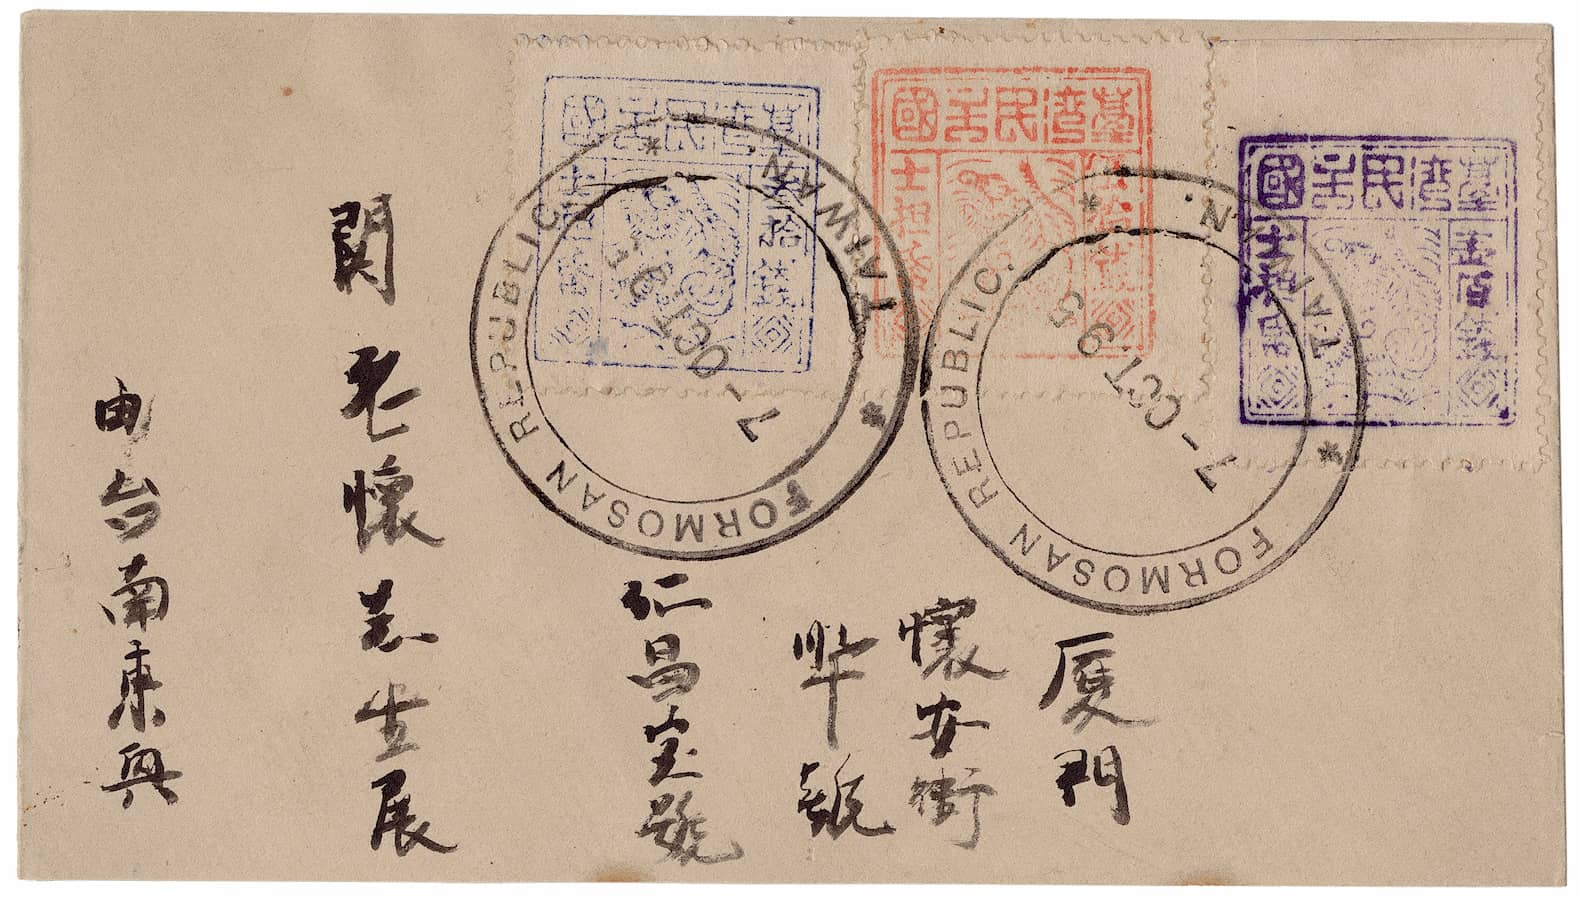 臺灣史上最大戰爭】臺灣民主國所發行的郵票圖樣，竟然被誤認成一隻抽筋